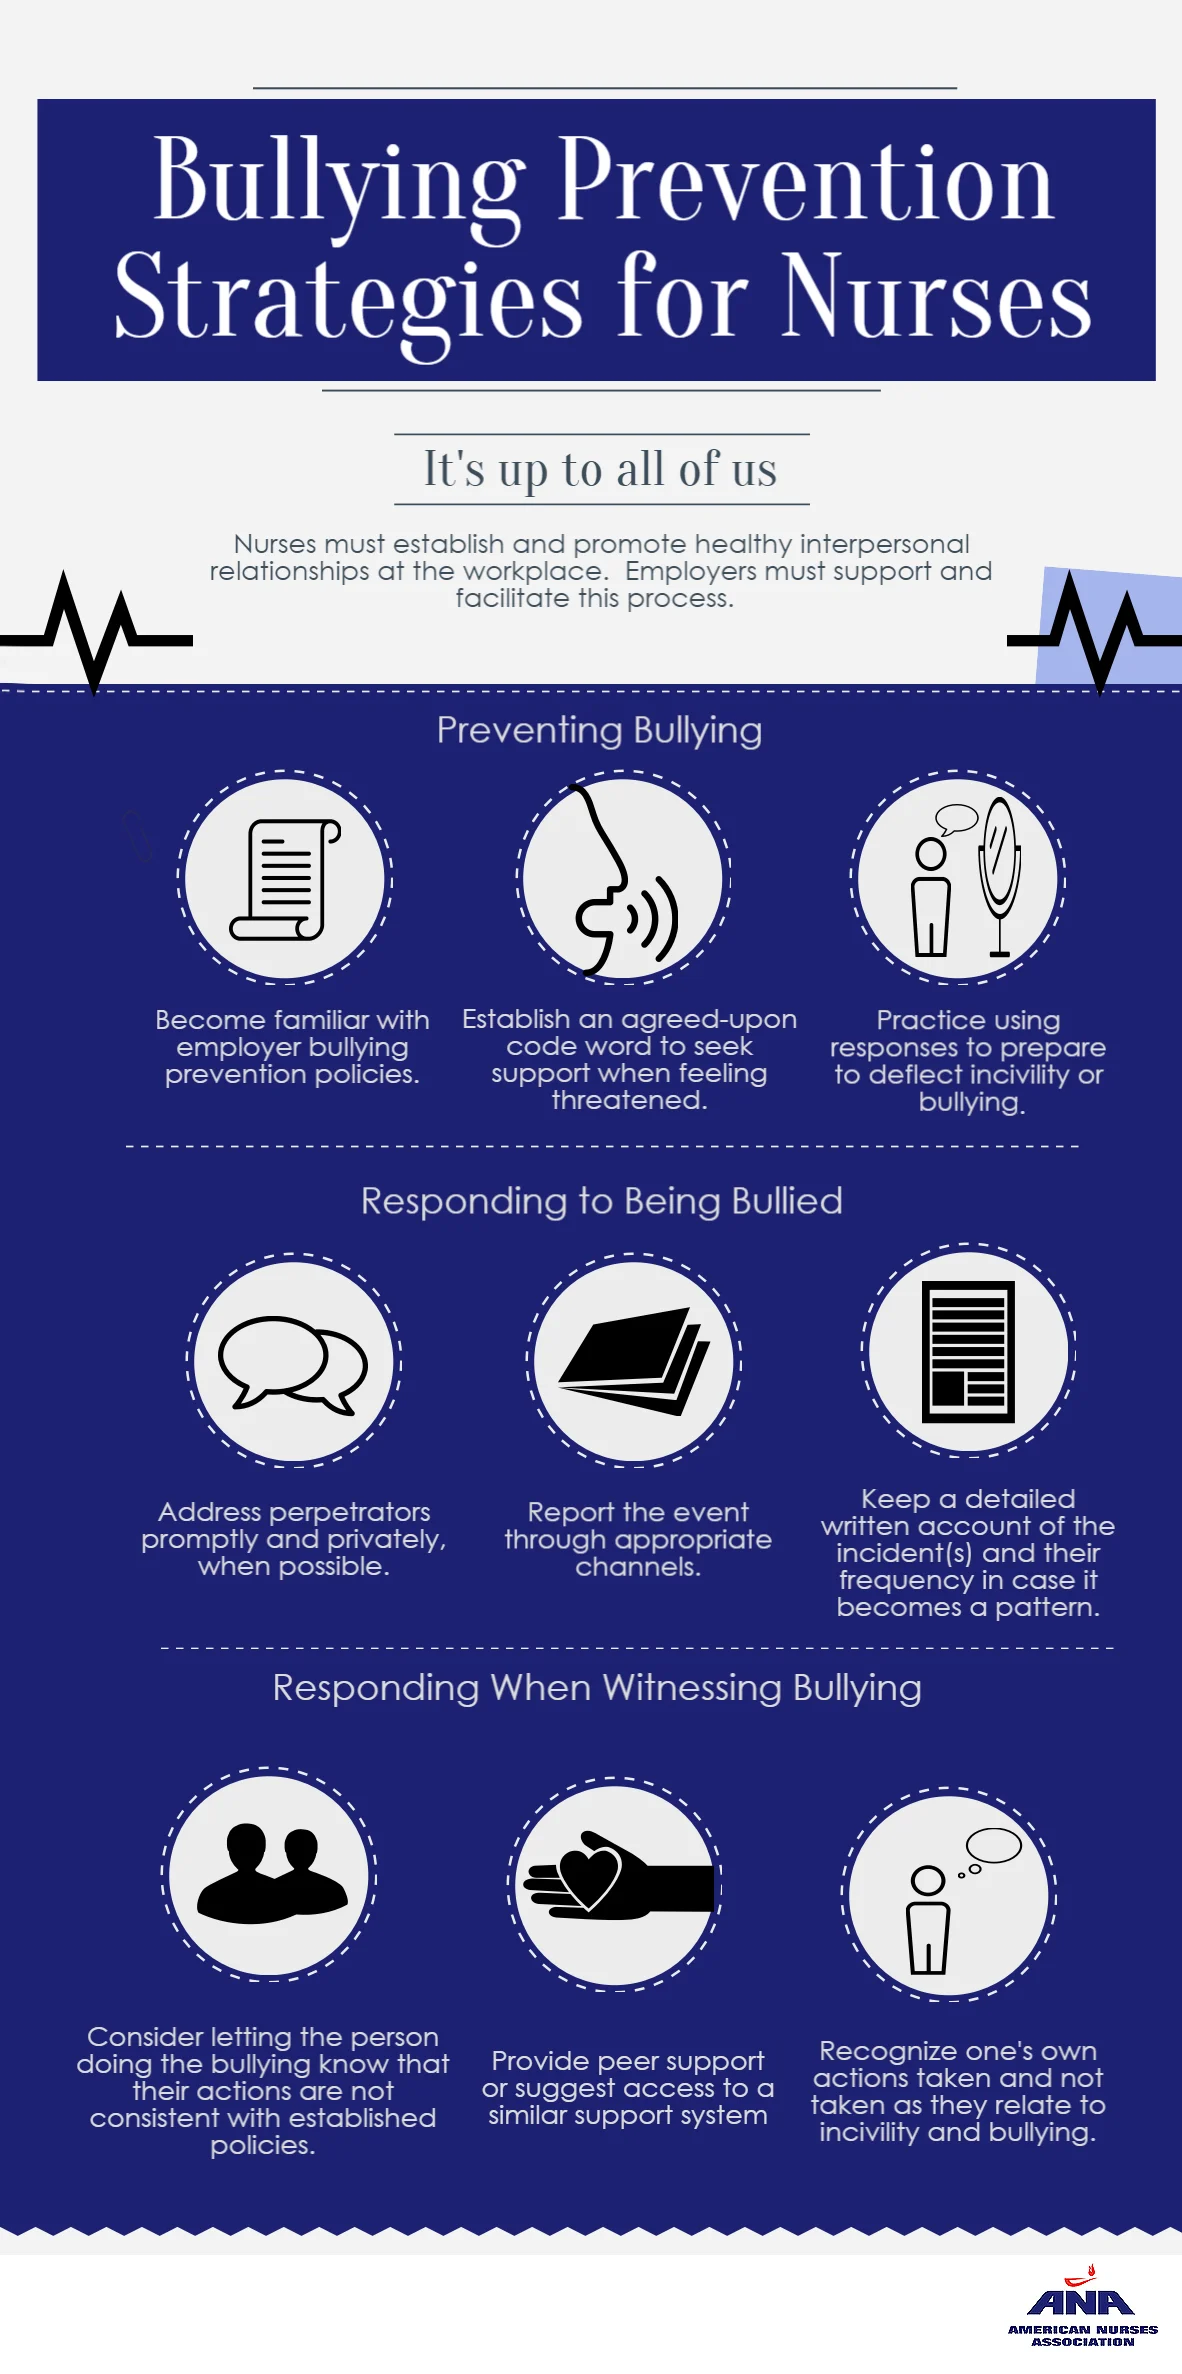 bullying prevention strategies for nurses.webp